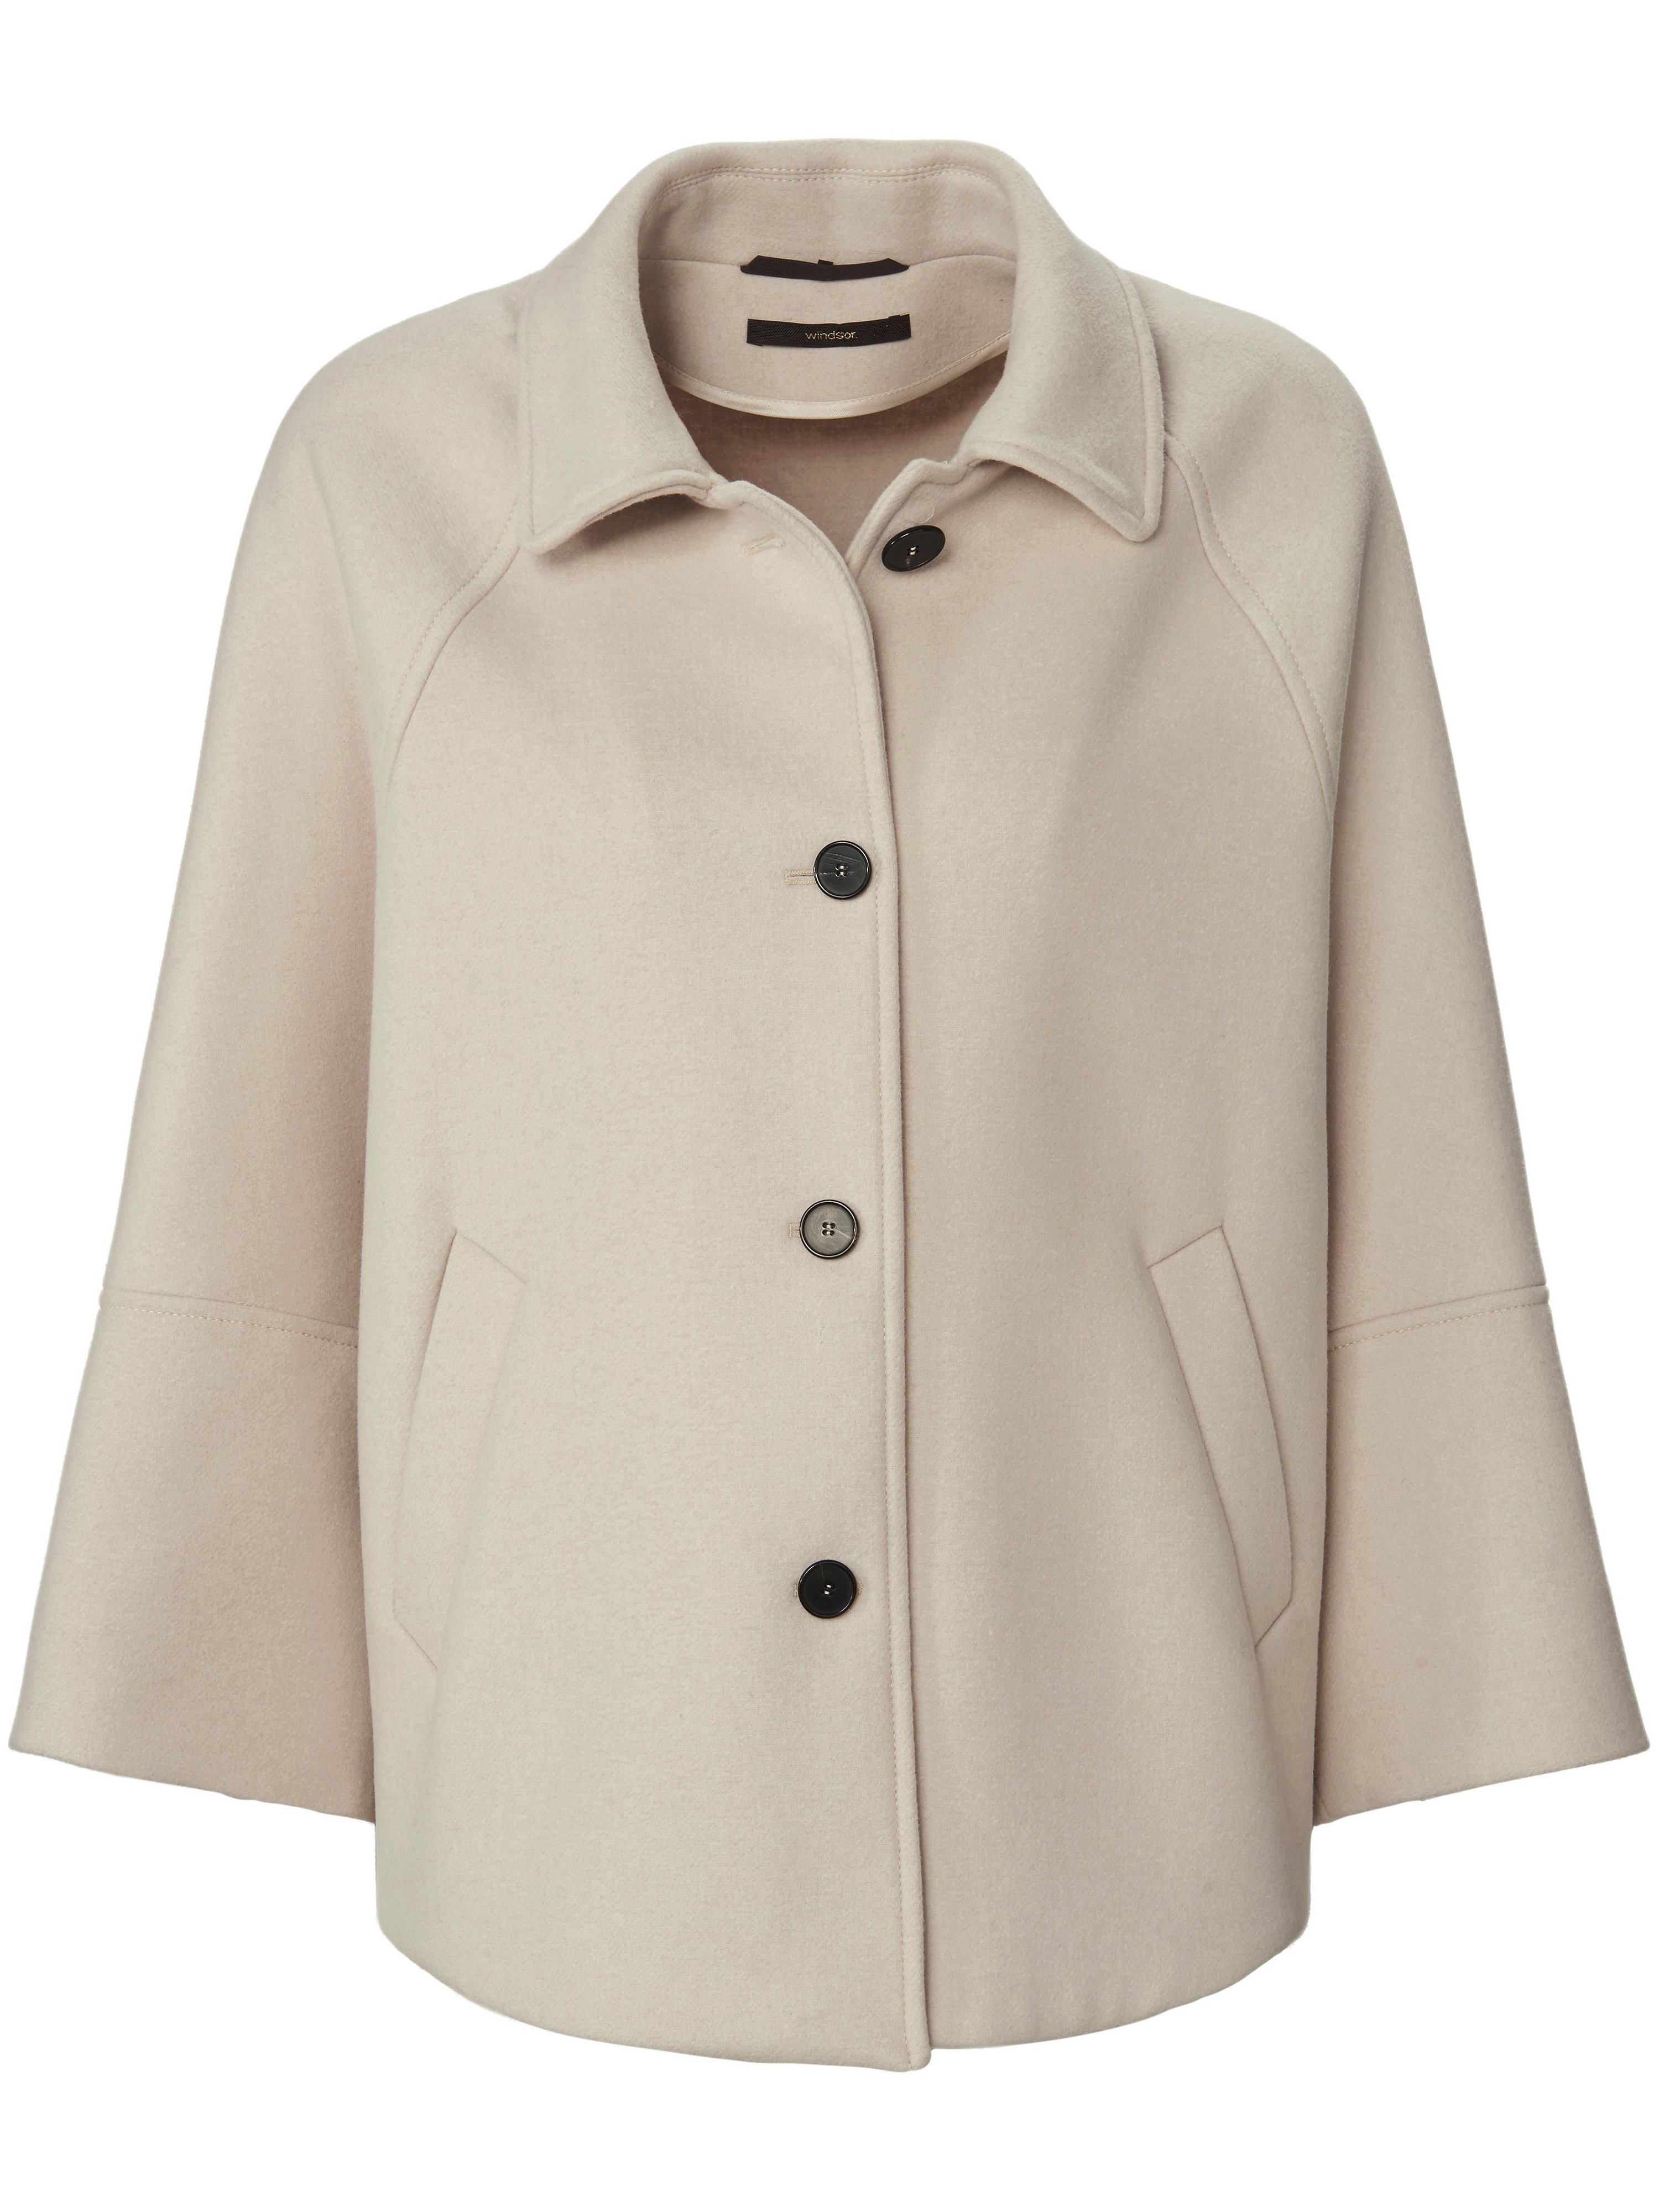 La veste cape avec manches 3/4 raglan  Windsor beige taille 38